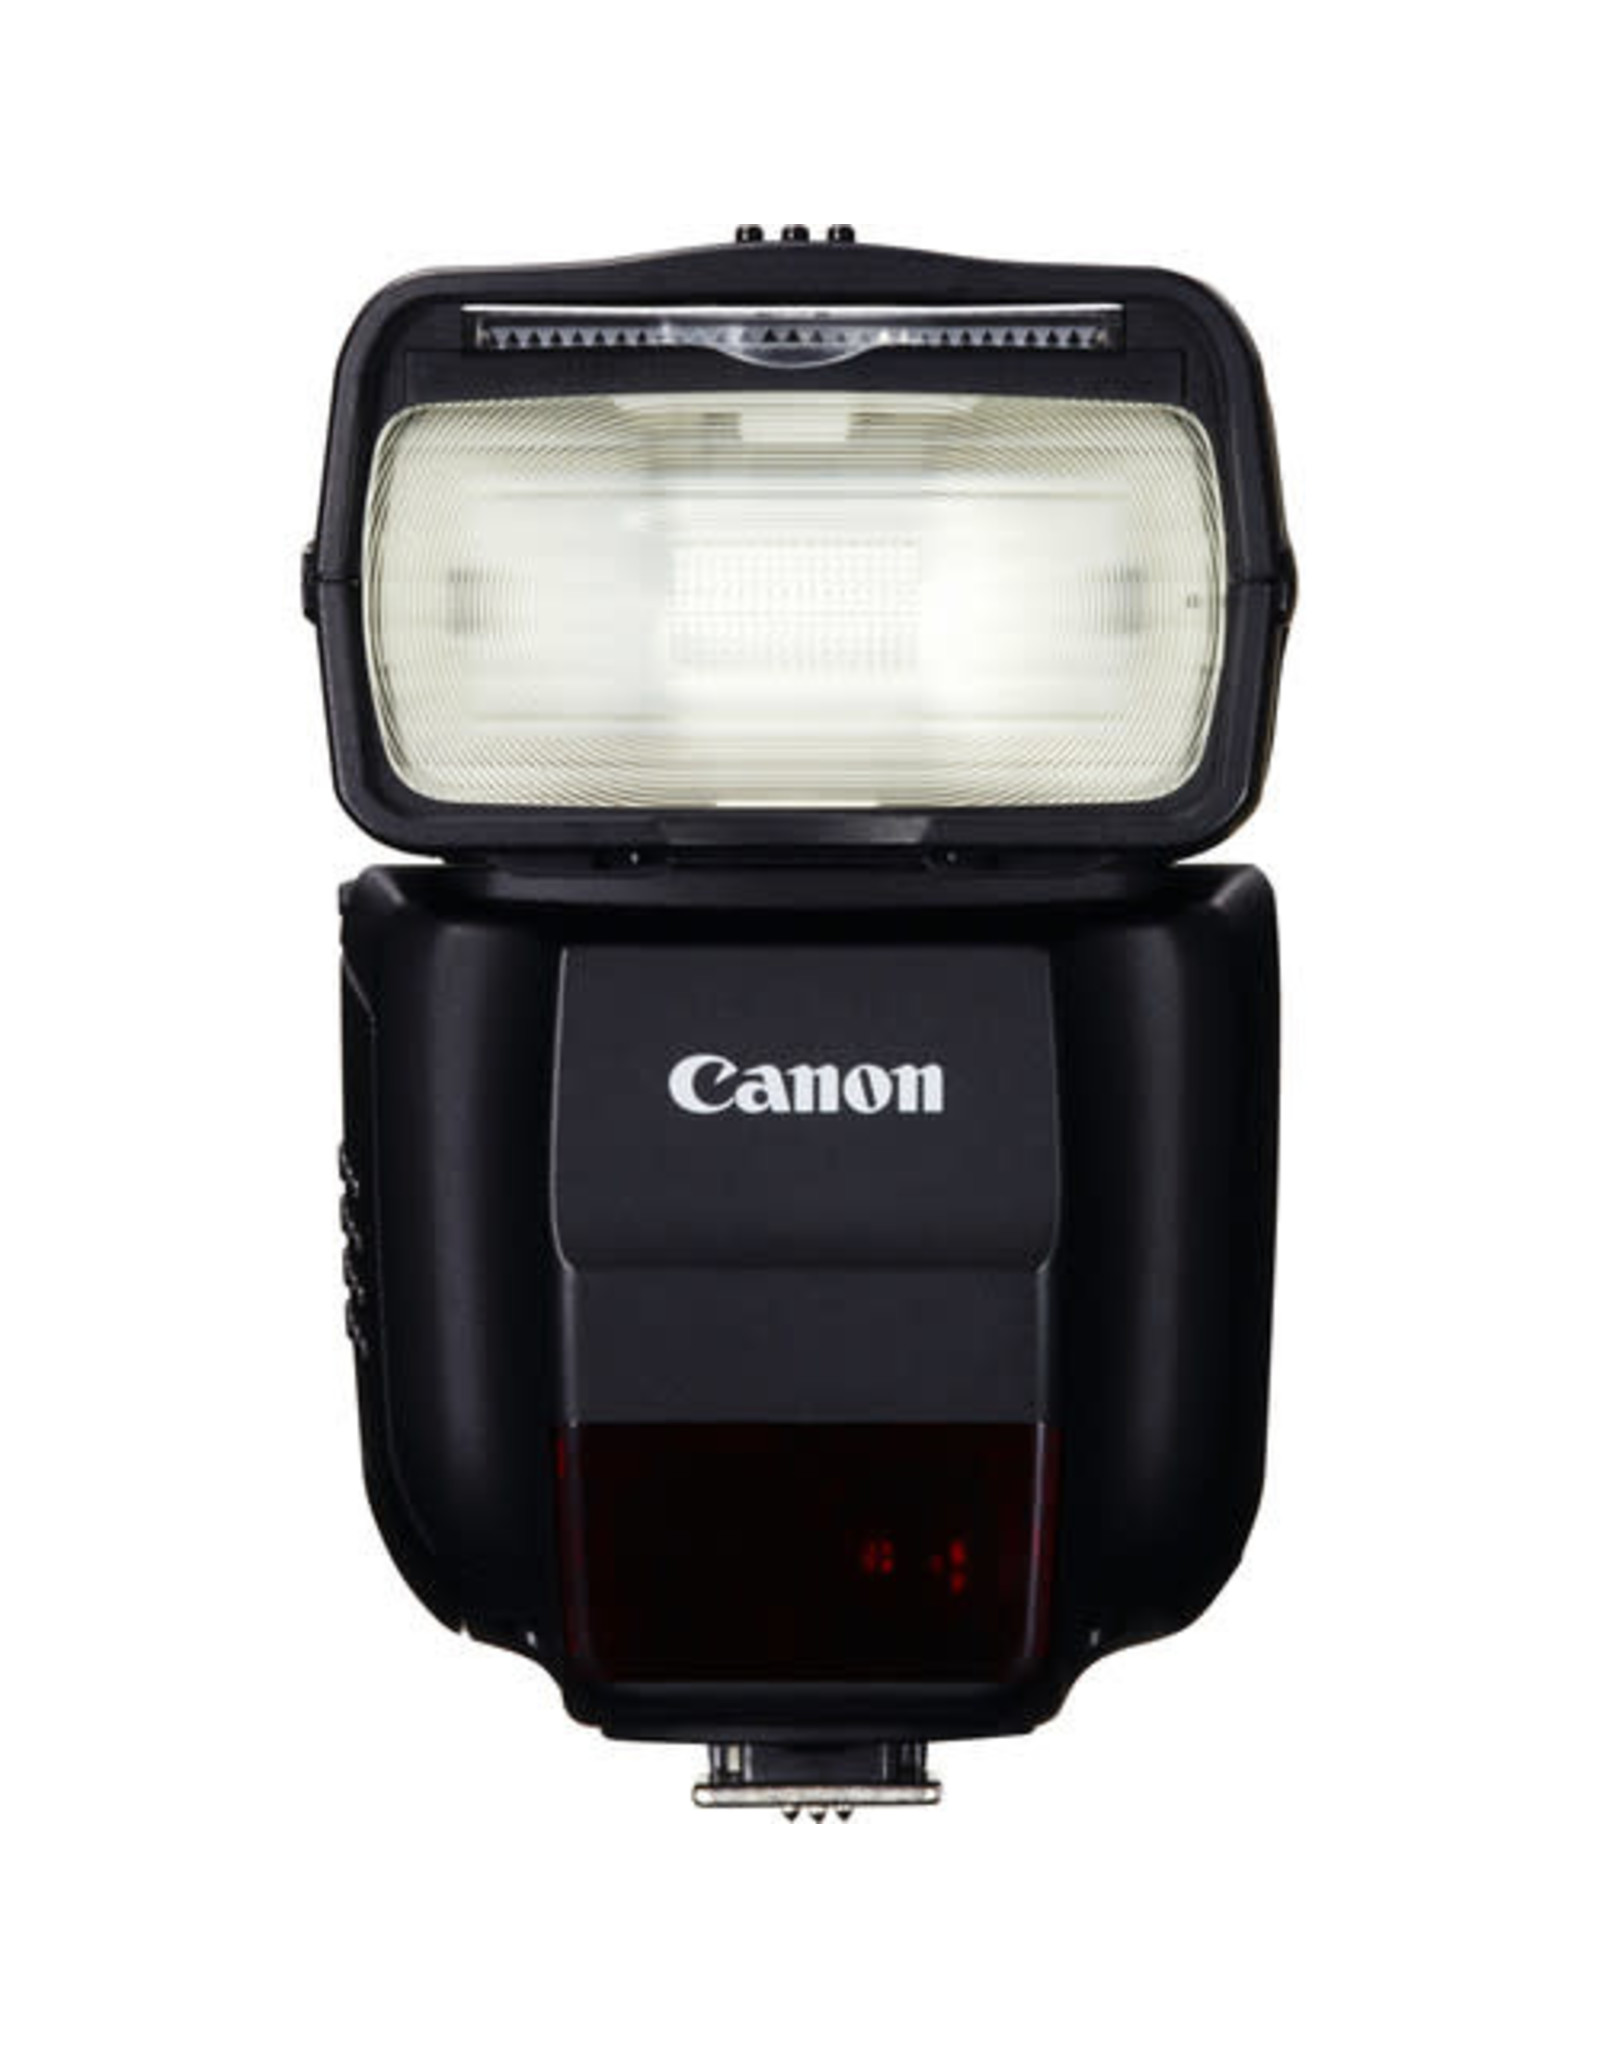 Canon Canon  Speedlite 430EX III-RT